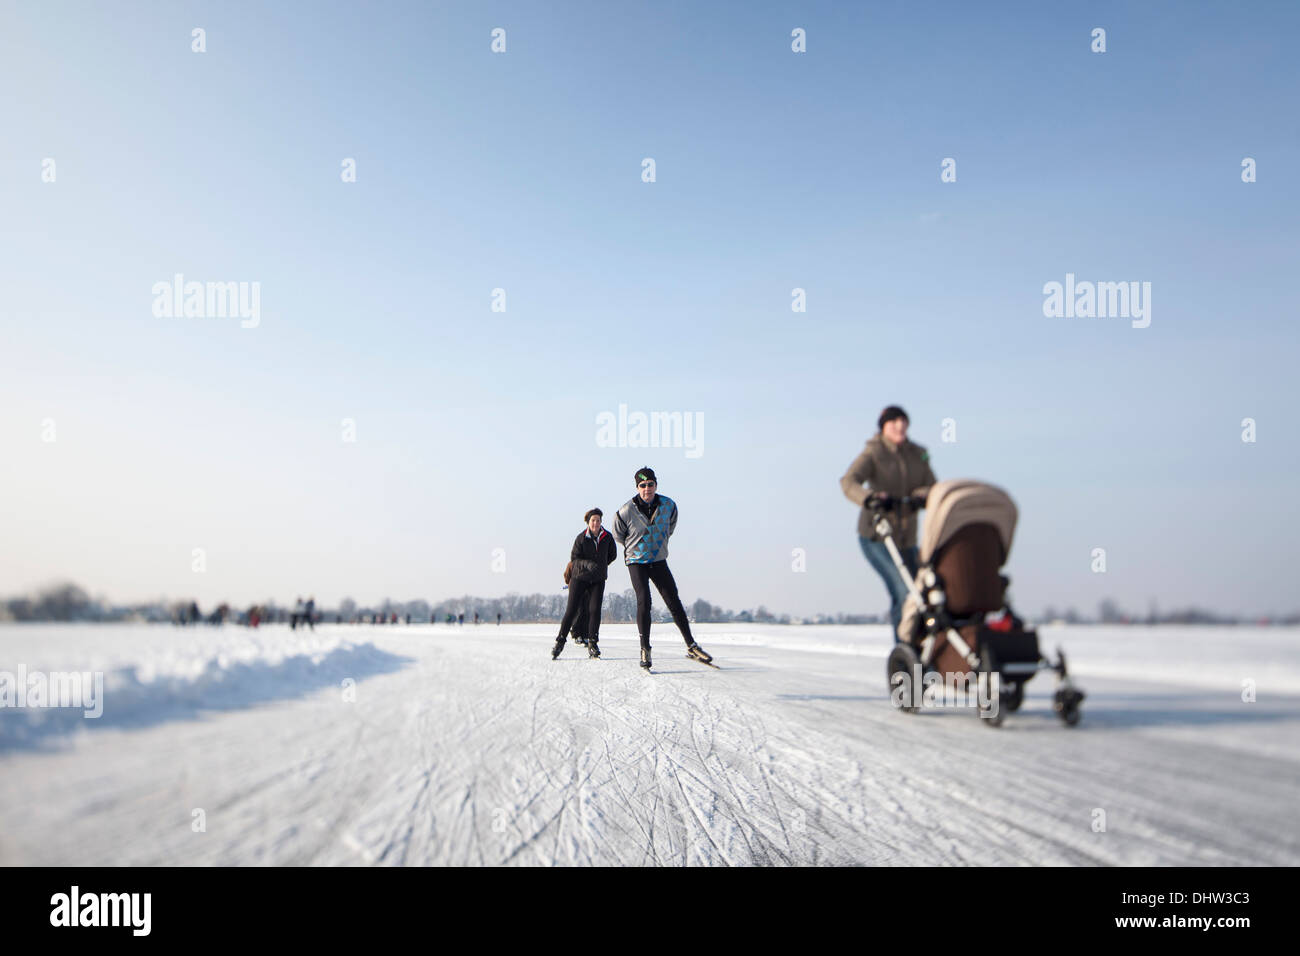 Paesi Bassi, Loosdrecht, laghi chiamato Loosdrechtse Plassen. L'inverno. Pattinaggio sul ghiaccio. Donna con buggy Foto Stock